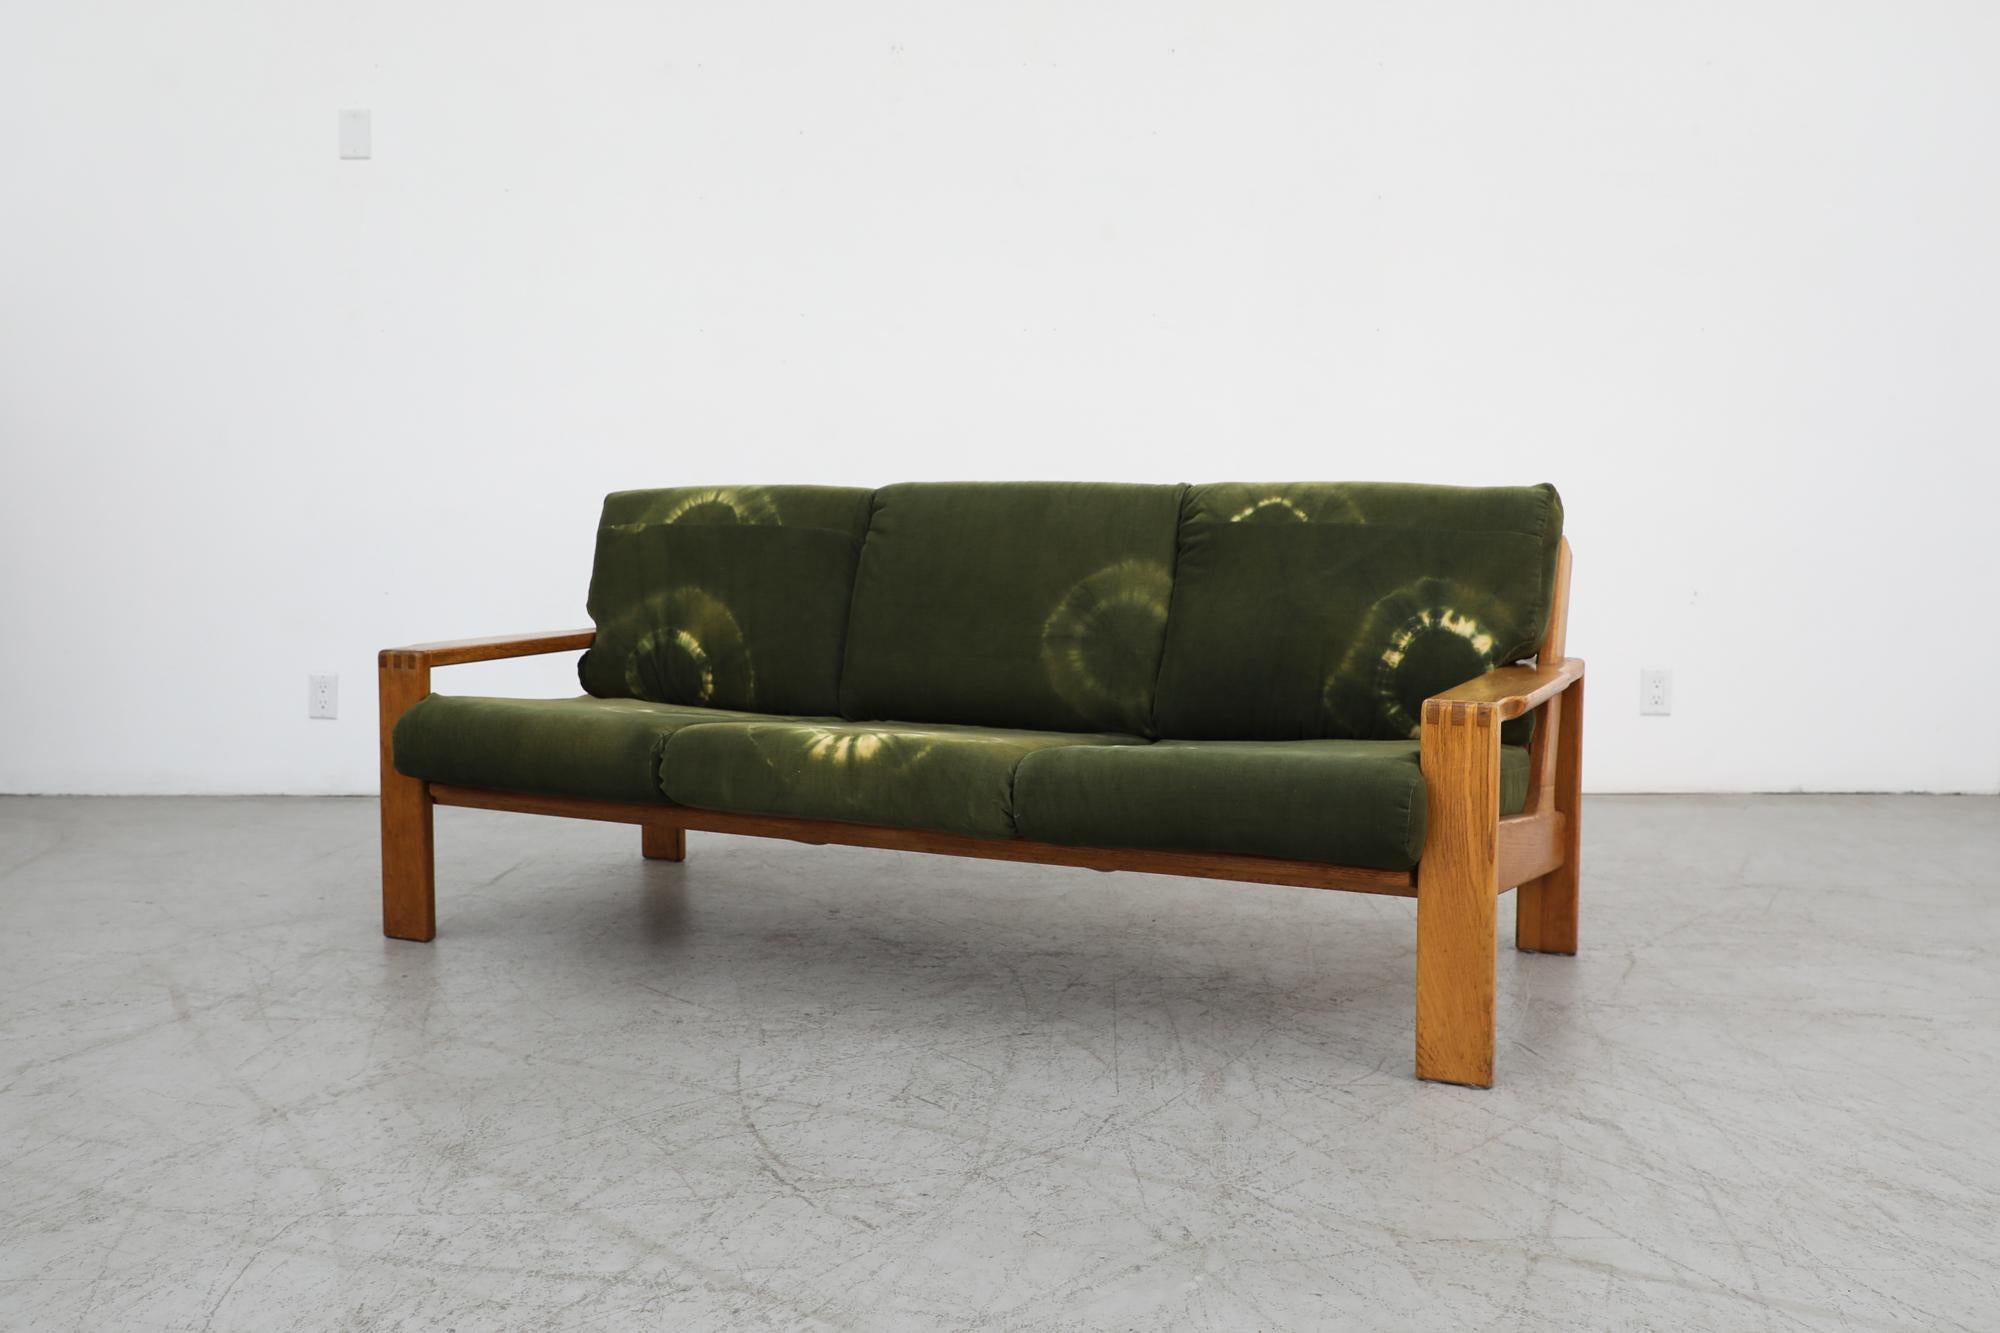 ekstrom sofa